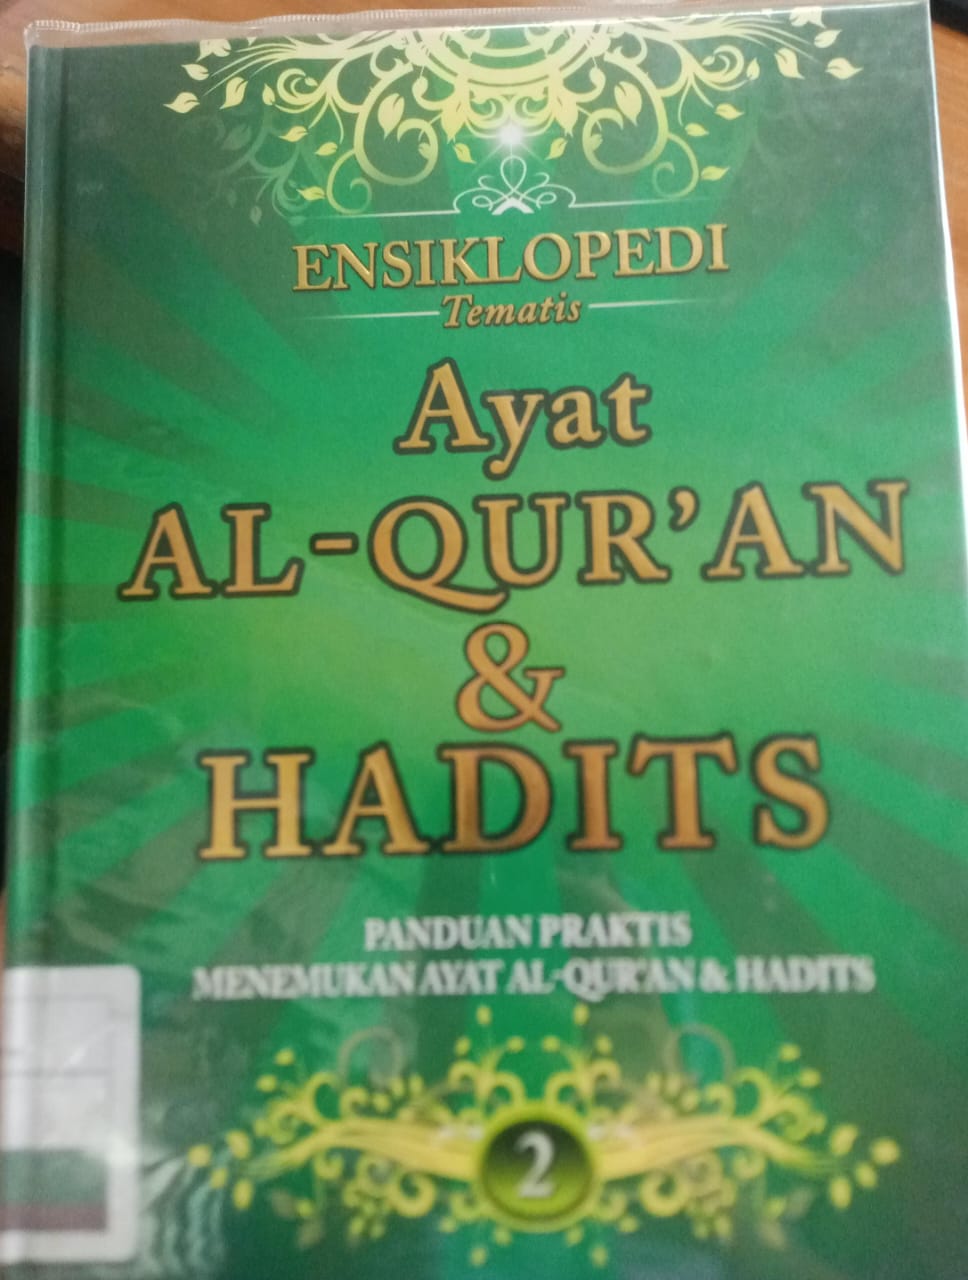 Ensiklopedi tematis ayat al-qur'an dan hadits jilid 2 :  Panduan praktis menemukan ayat al-qur'an & hadits